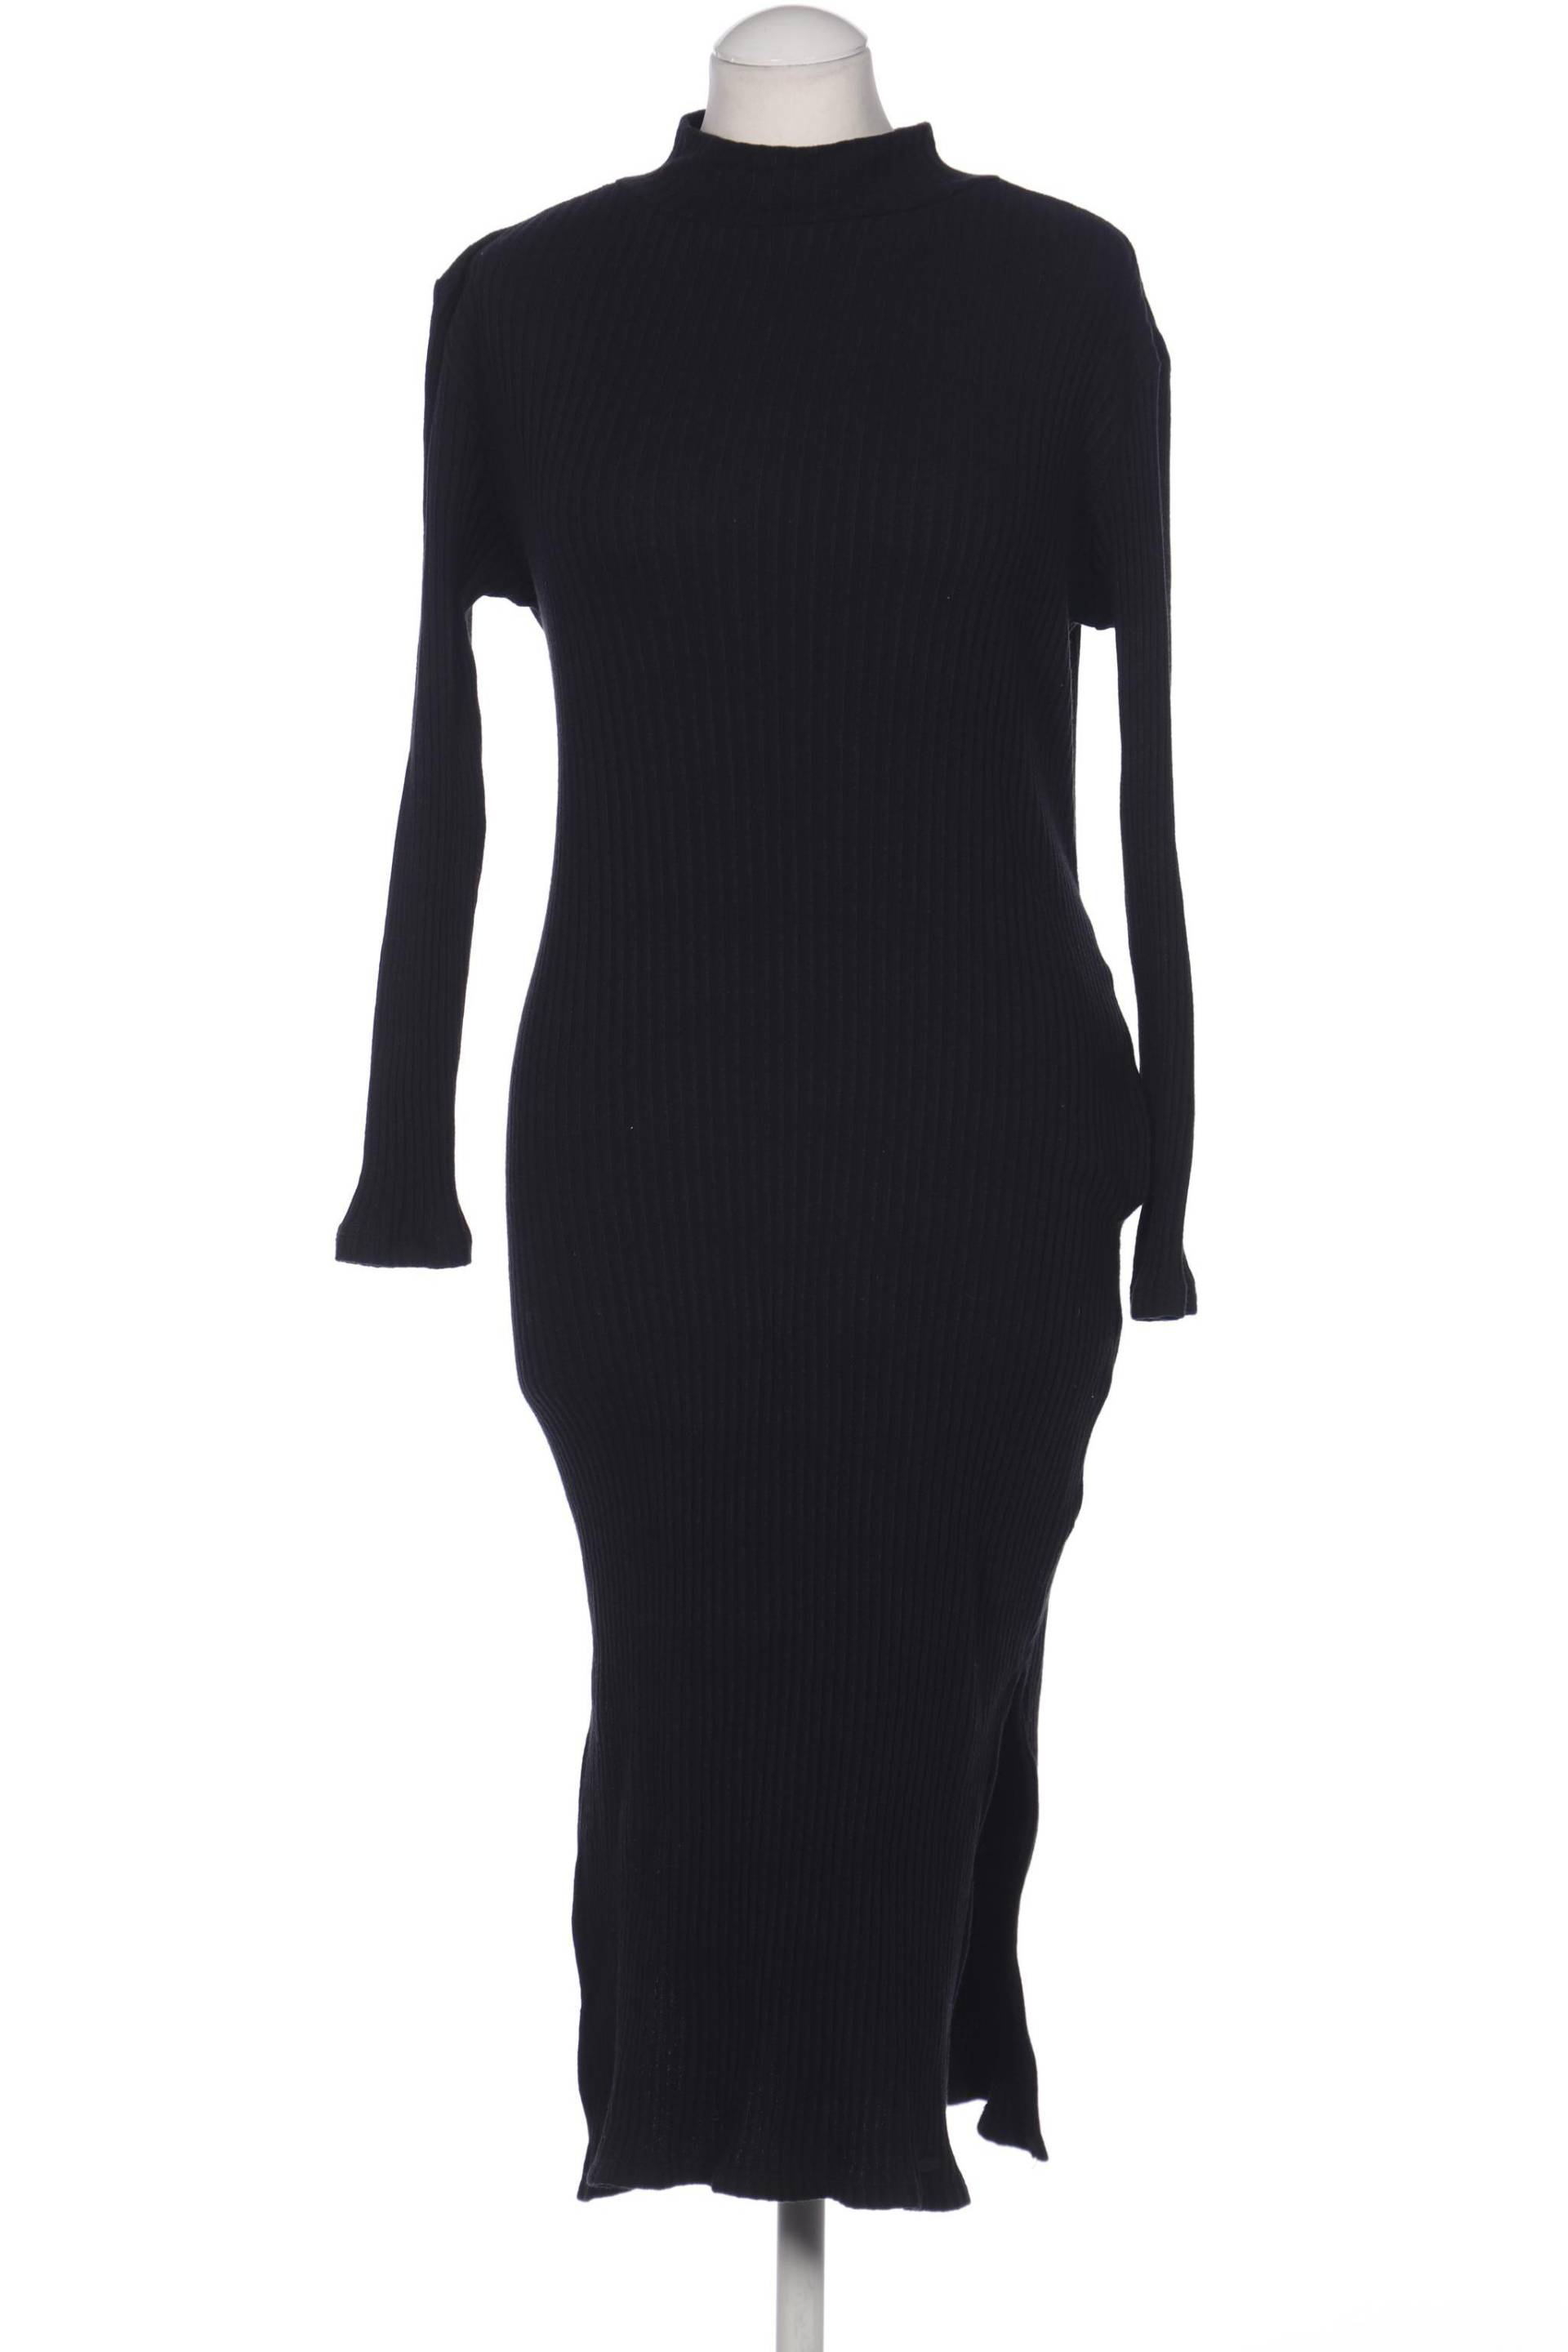 O Neill Damen Kleid, schwarz, Gr. 38 von O Neill